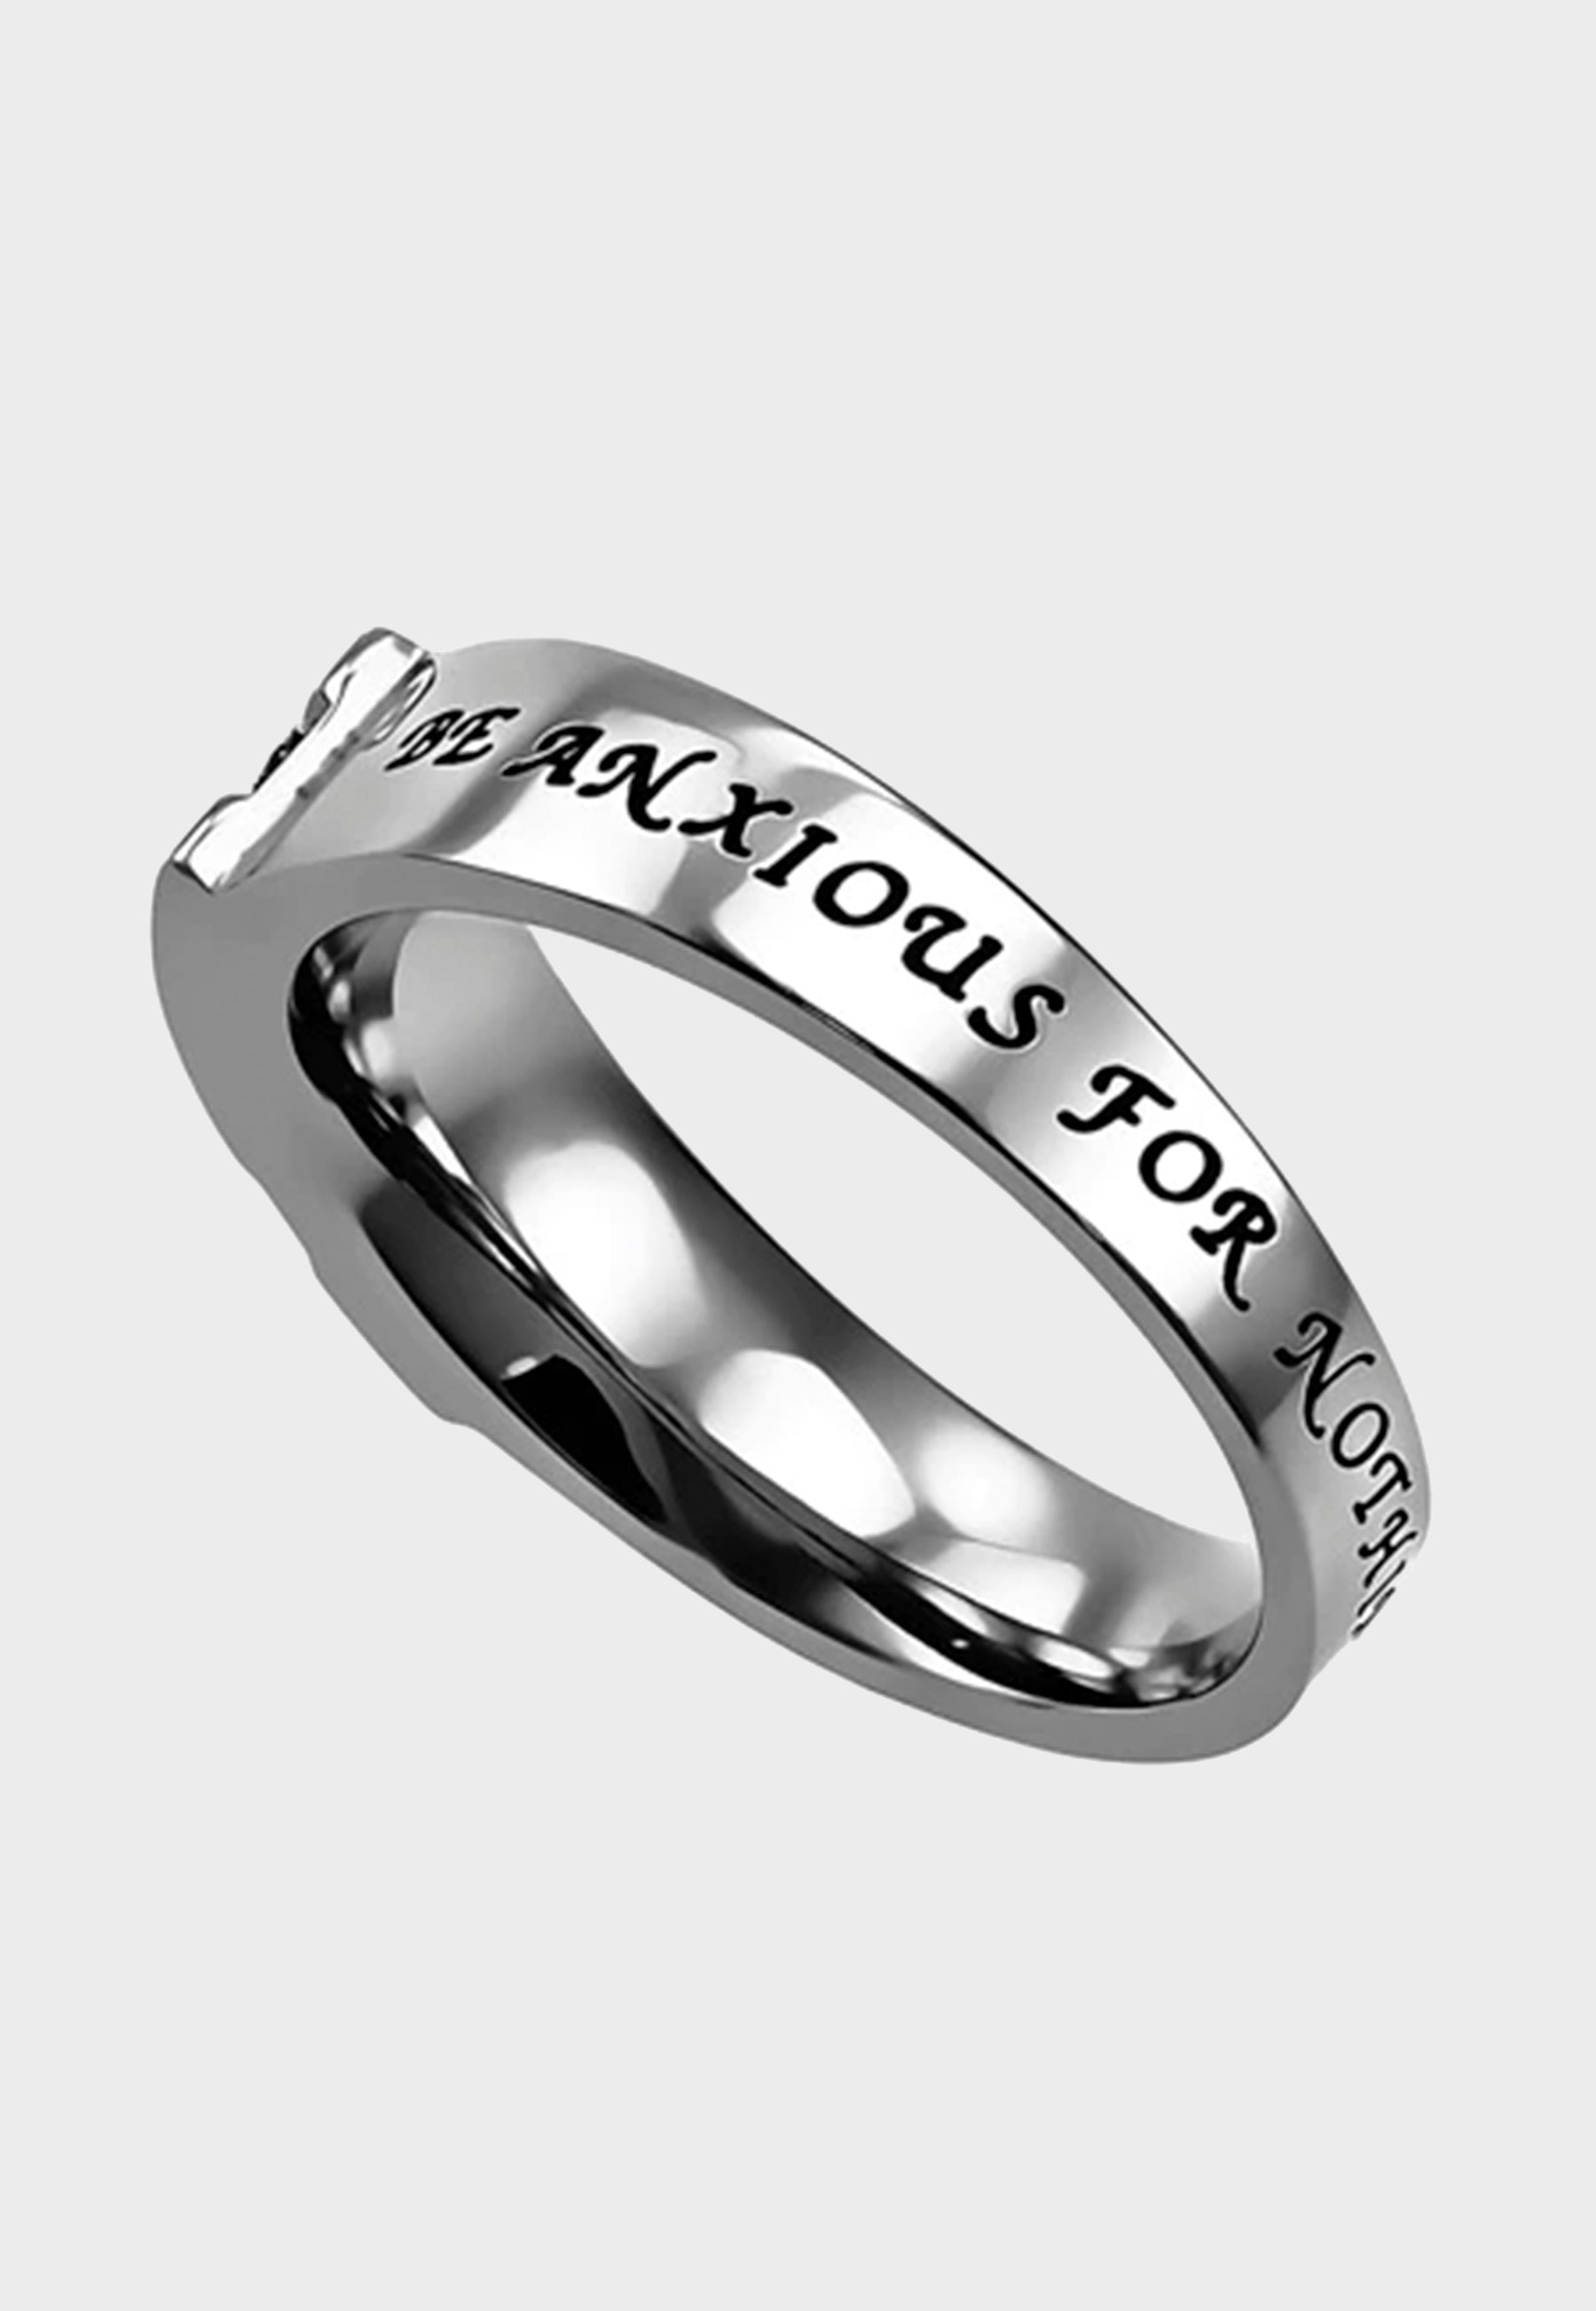 Women's Christian ring